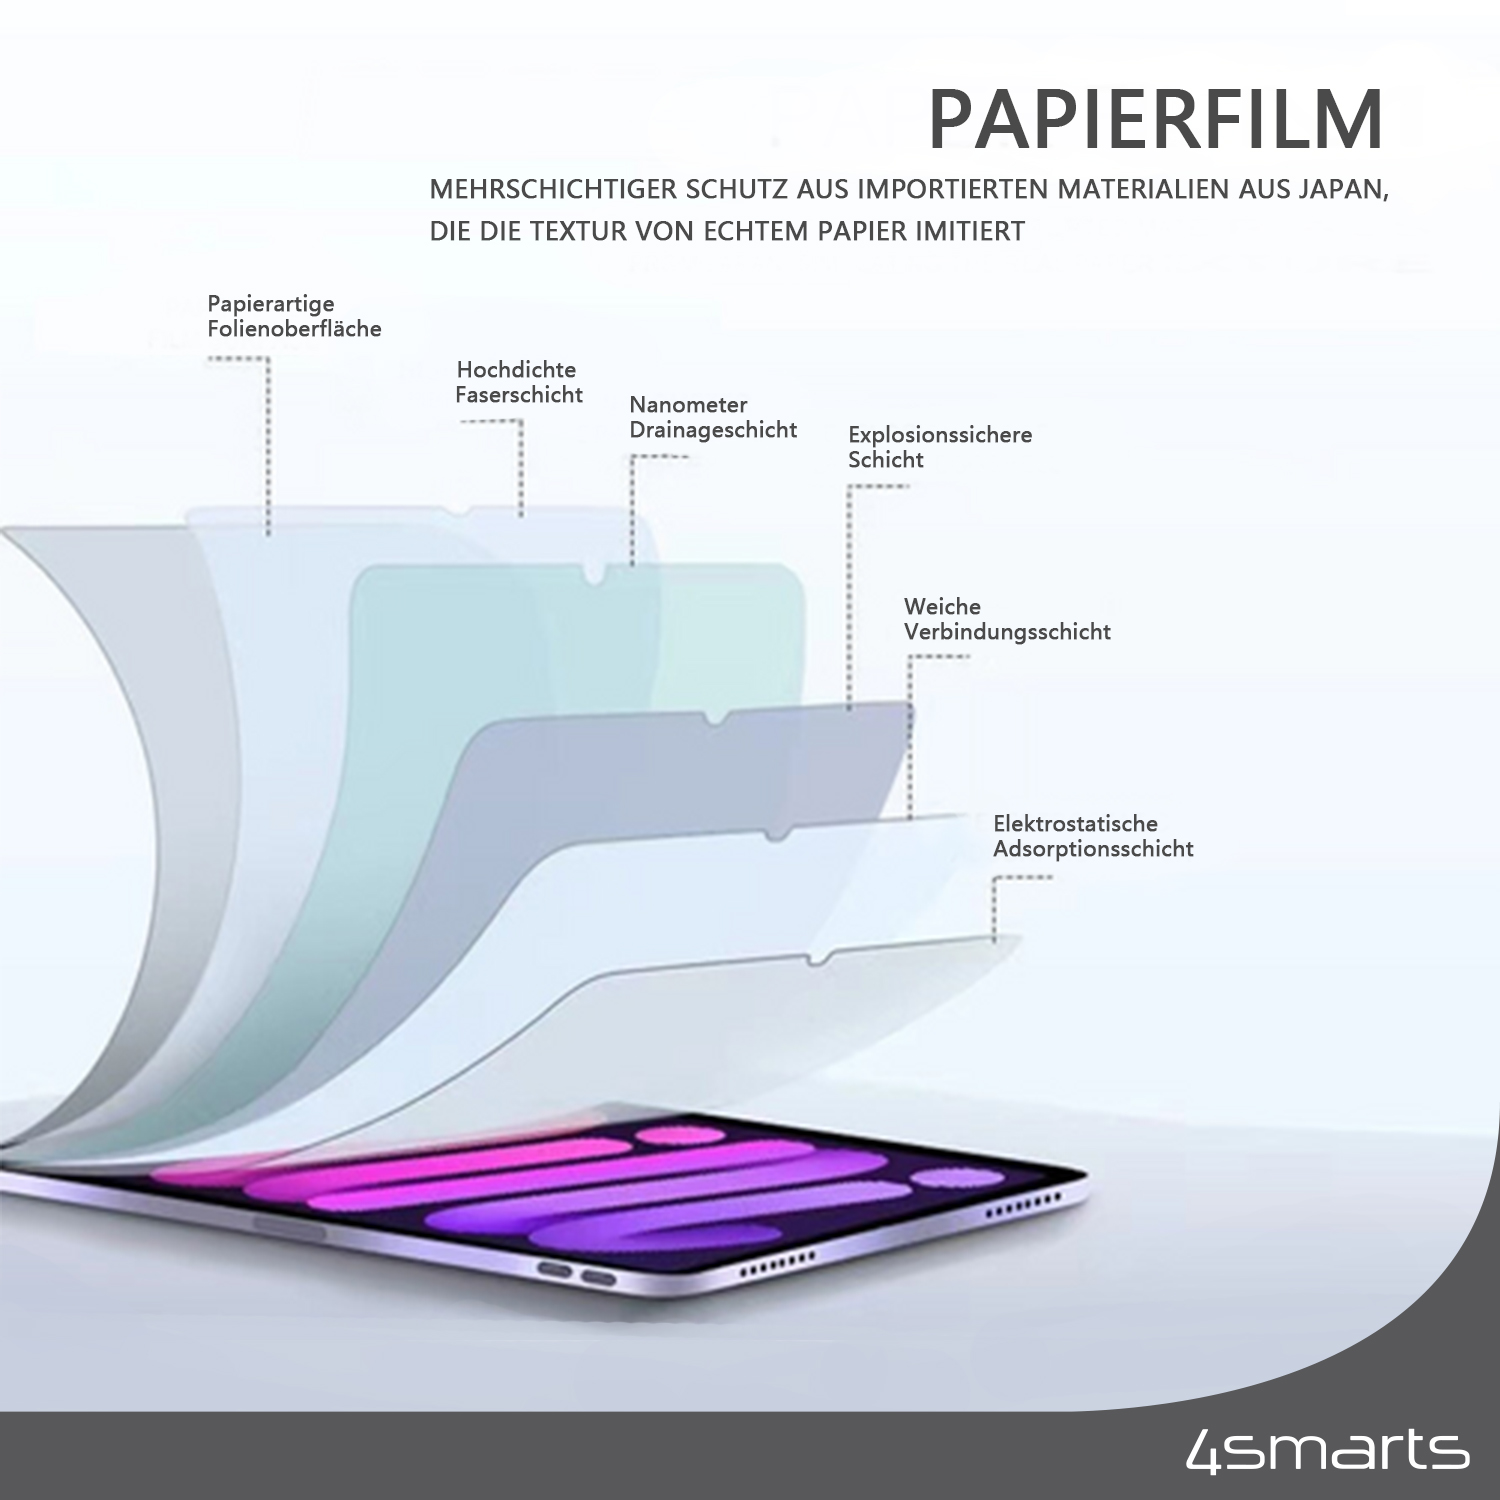 Die 4smarts iPad Folie matt sorgt dafür, dass keine Fingerabdrücke sichtbar sind.